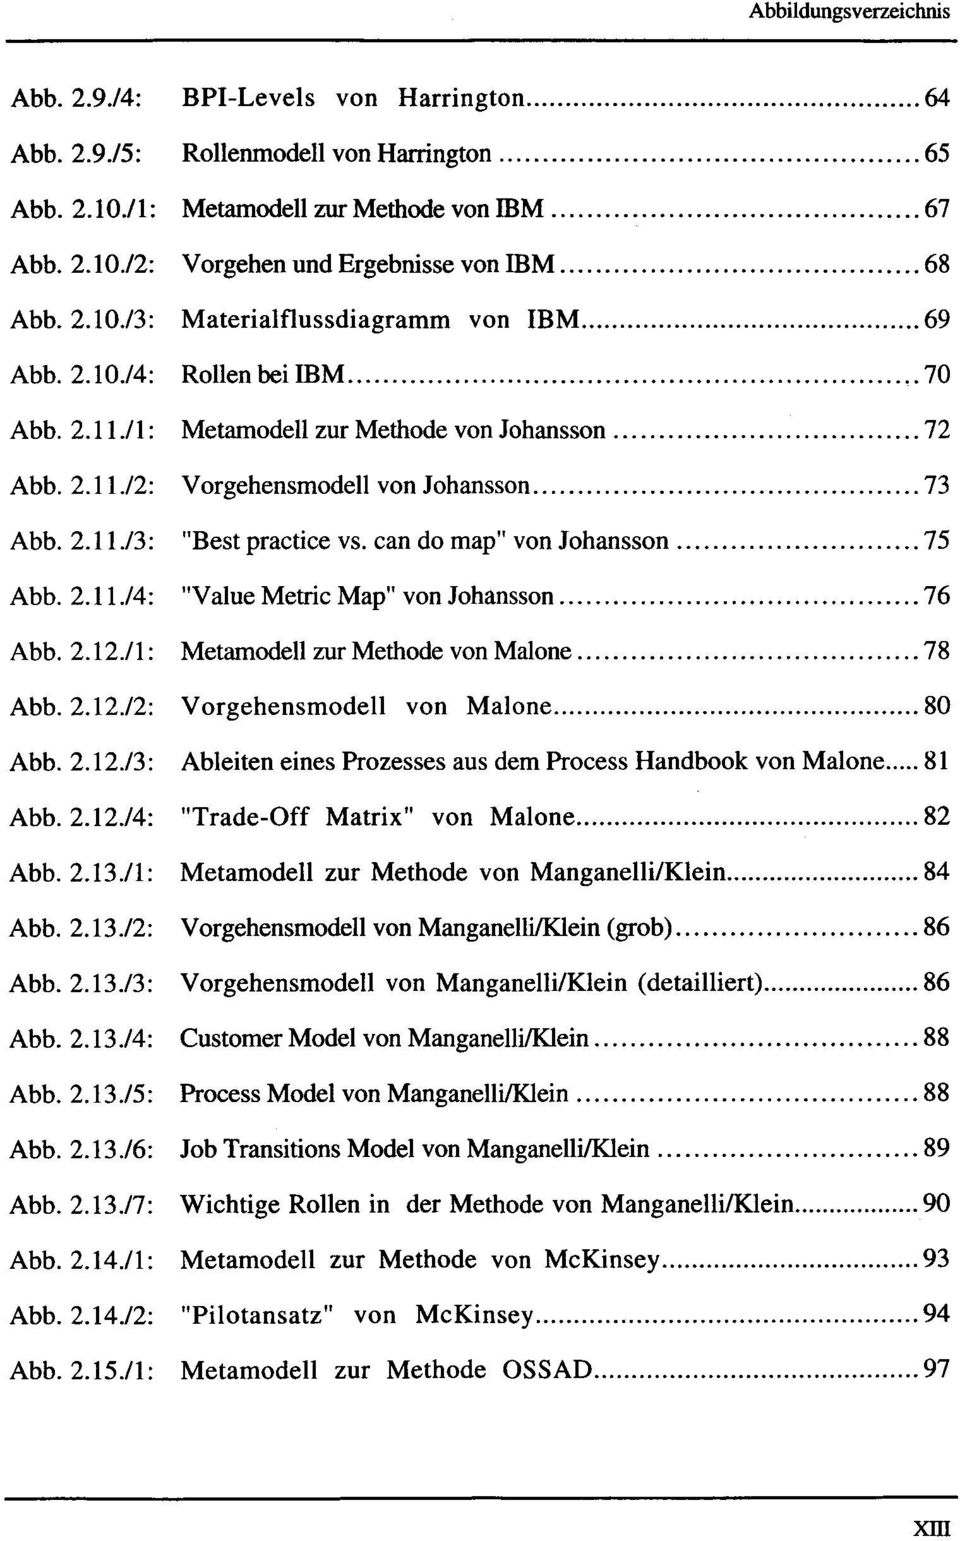 can do map" von Johansson... 75 Abb.2.11J4: "Value Metric Map" von Johansson... 76 Abb. 2.12./1: Metamodell zur Methode von Malone... 78 Abb.2.12./2: Vorgehensmodell von Malone... 80 Abb.2.12./3: Ableiten eines Prozesses aus dem Process Handbook von Malone.